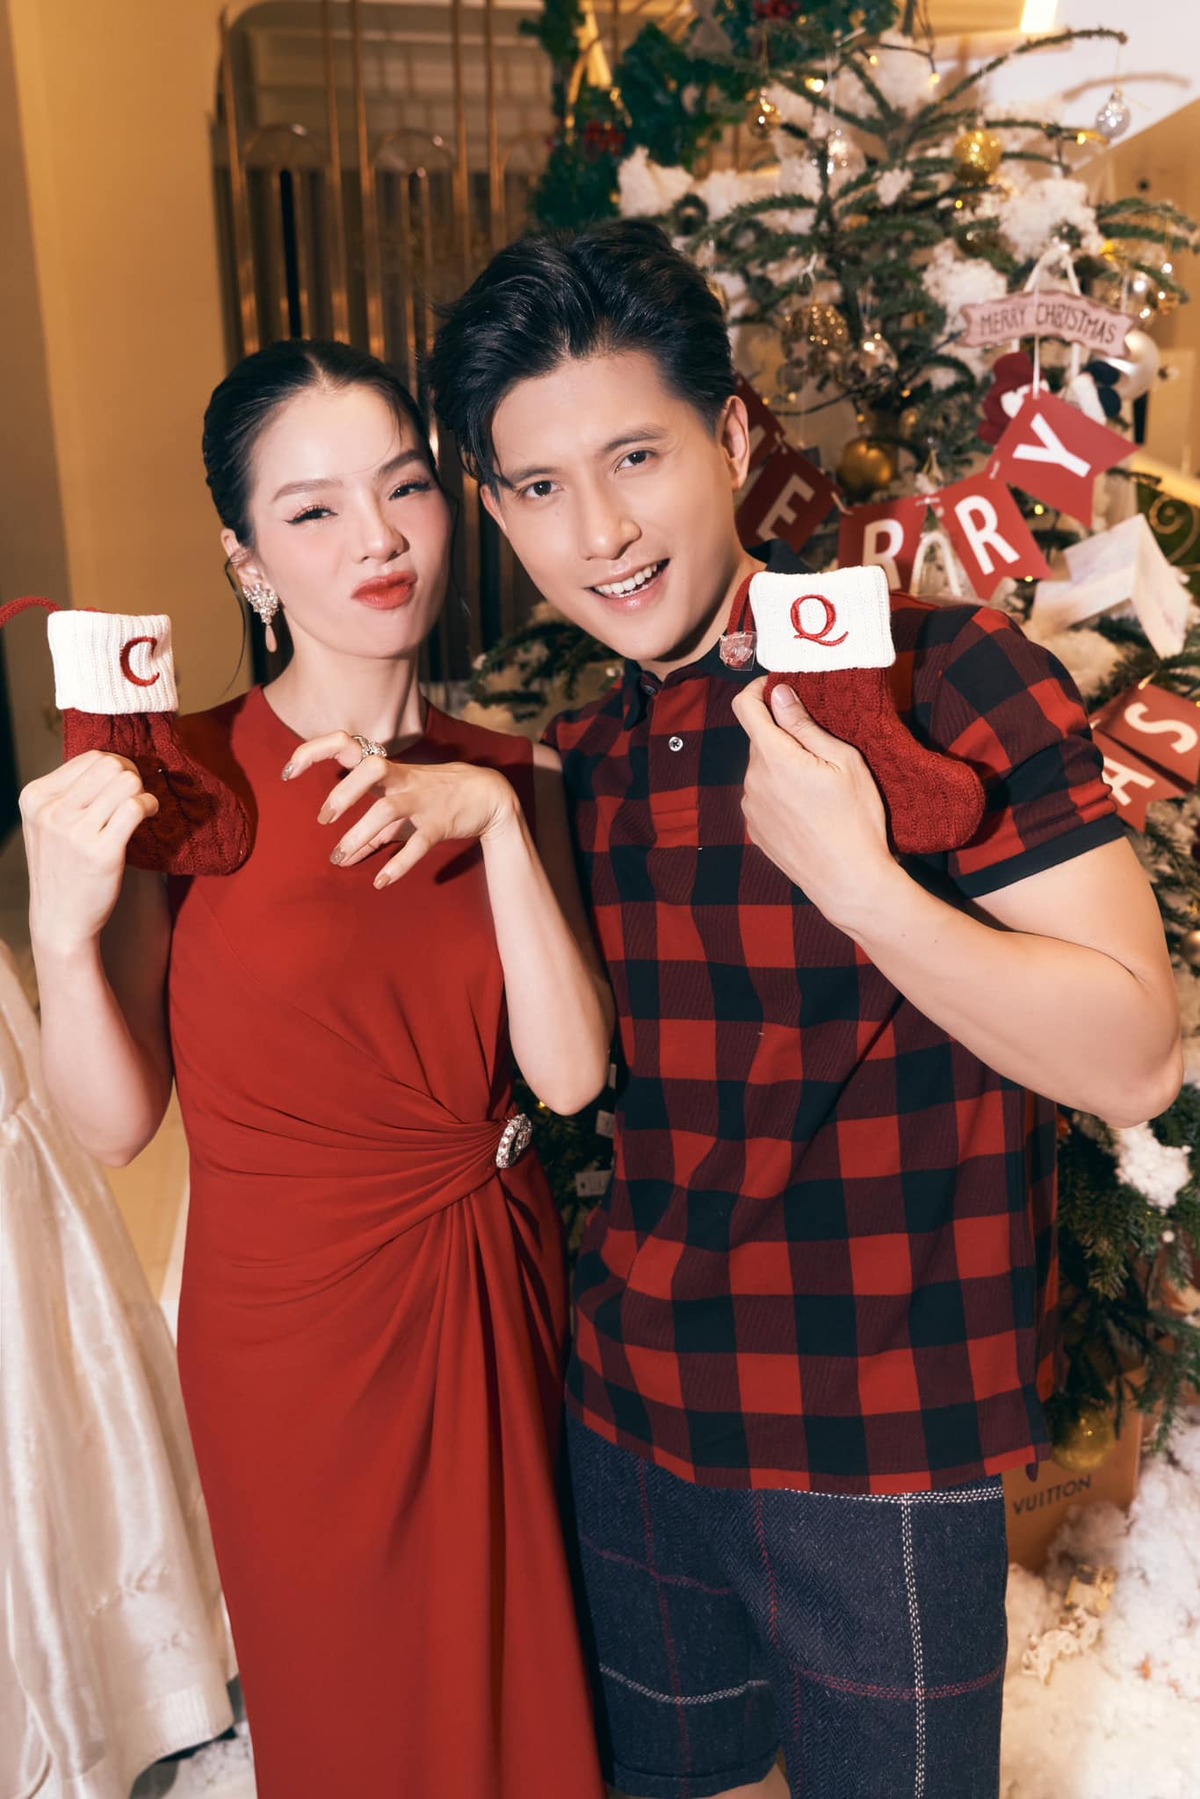 Ca sĩ Lệ Quyên và bạn trai Lâm Bảo Châu cũng thực hiện bộ ảnh Giáng sinh, cả hai tạo dáng nhắng nhít bên cây thông trong không khí lễ. Trên trang cá nhân, Lệ Quyên gửi lời chúc đến mọi người kèm tiết lộ: 